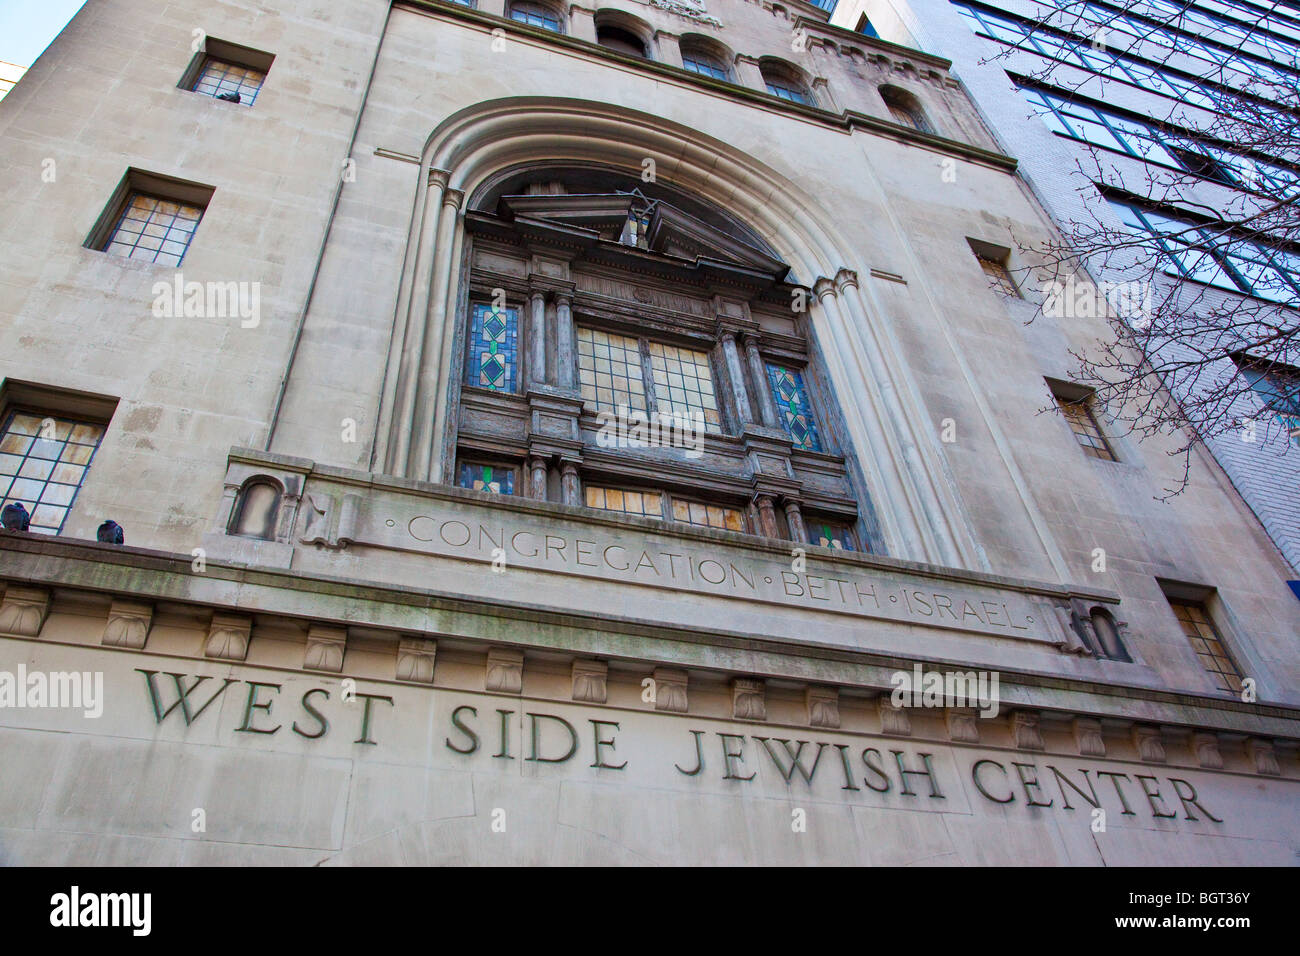 Congregazione Beth Israele sul lato ovest del centro ebraico di Manhattan a New York City Foto Stock